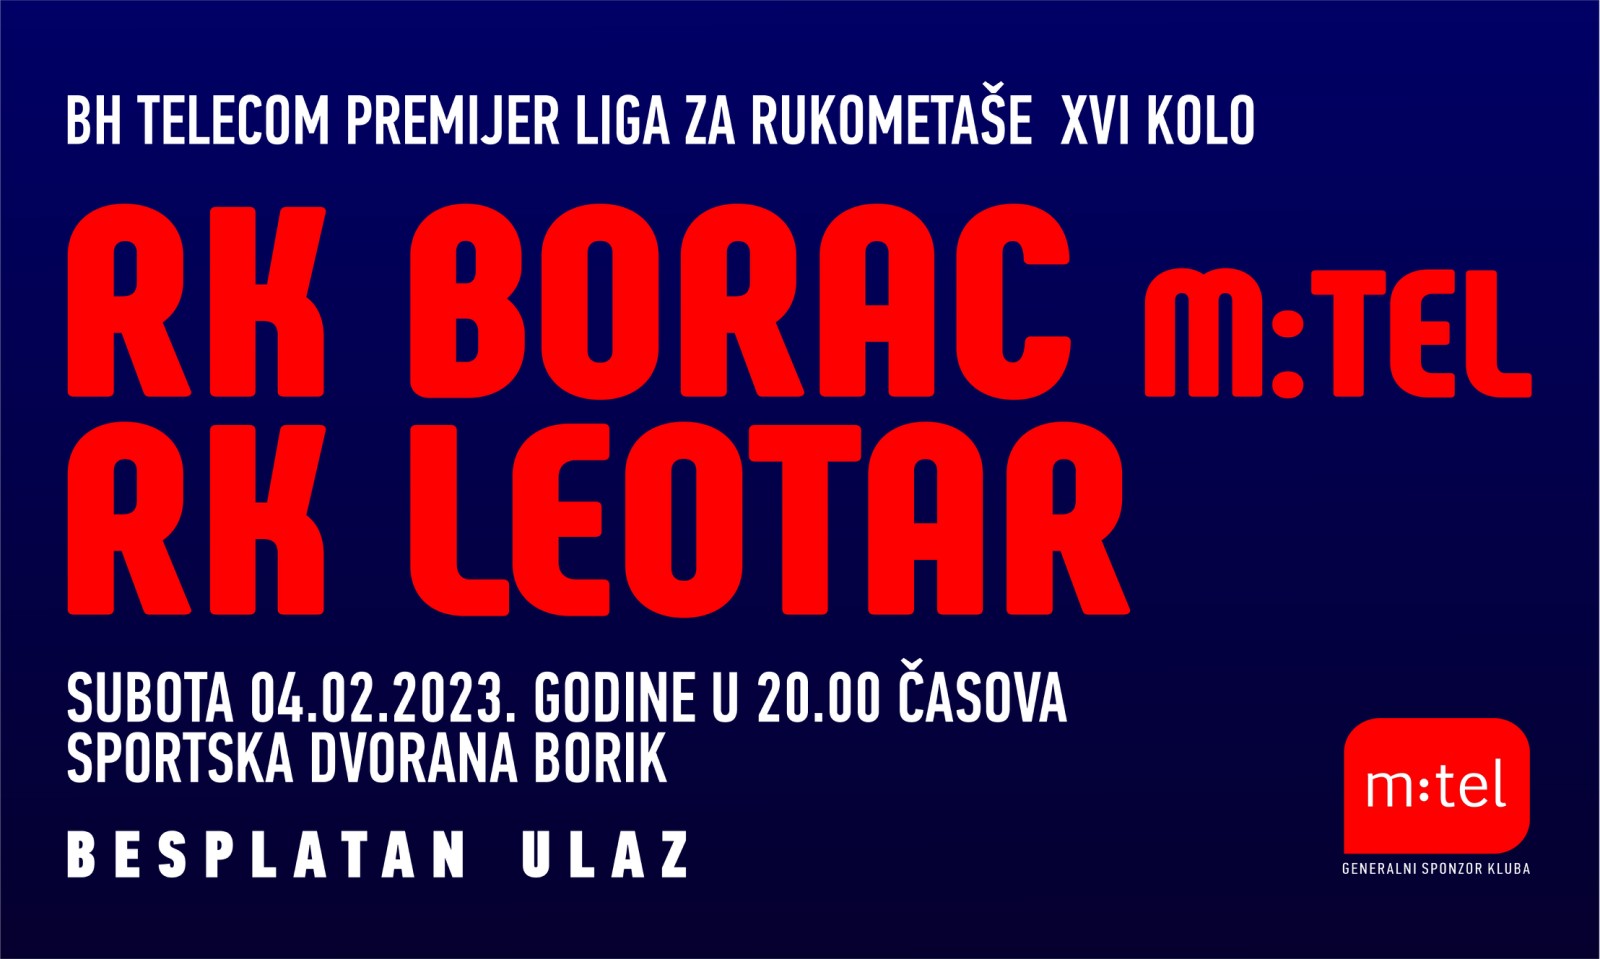 RK Borac vs RK Leotar BH Telekom premijer liga 16.kolo sezona 2022/23